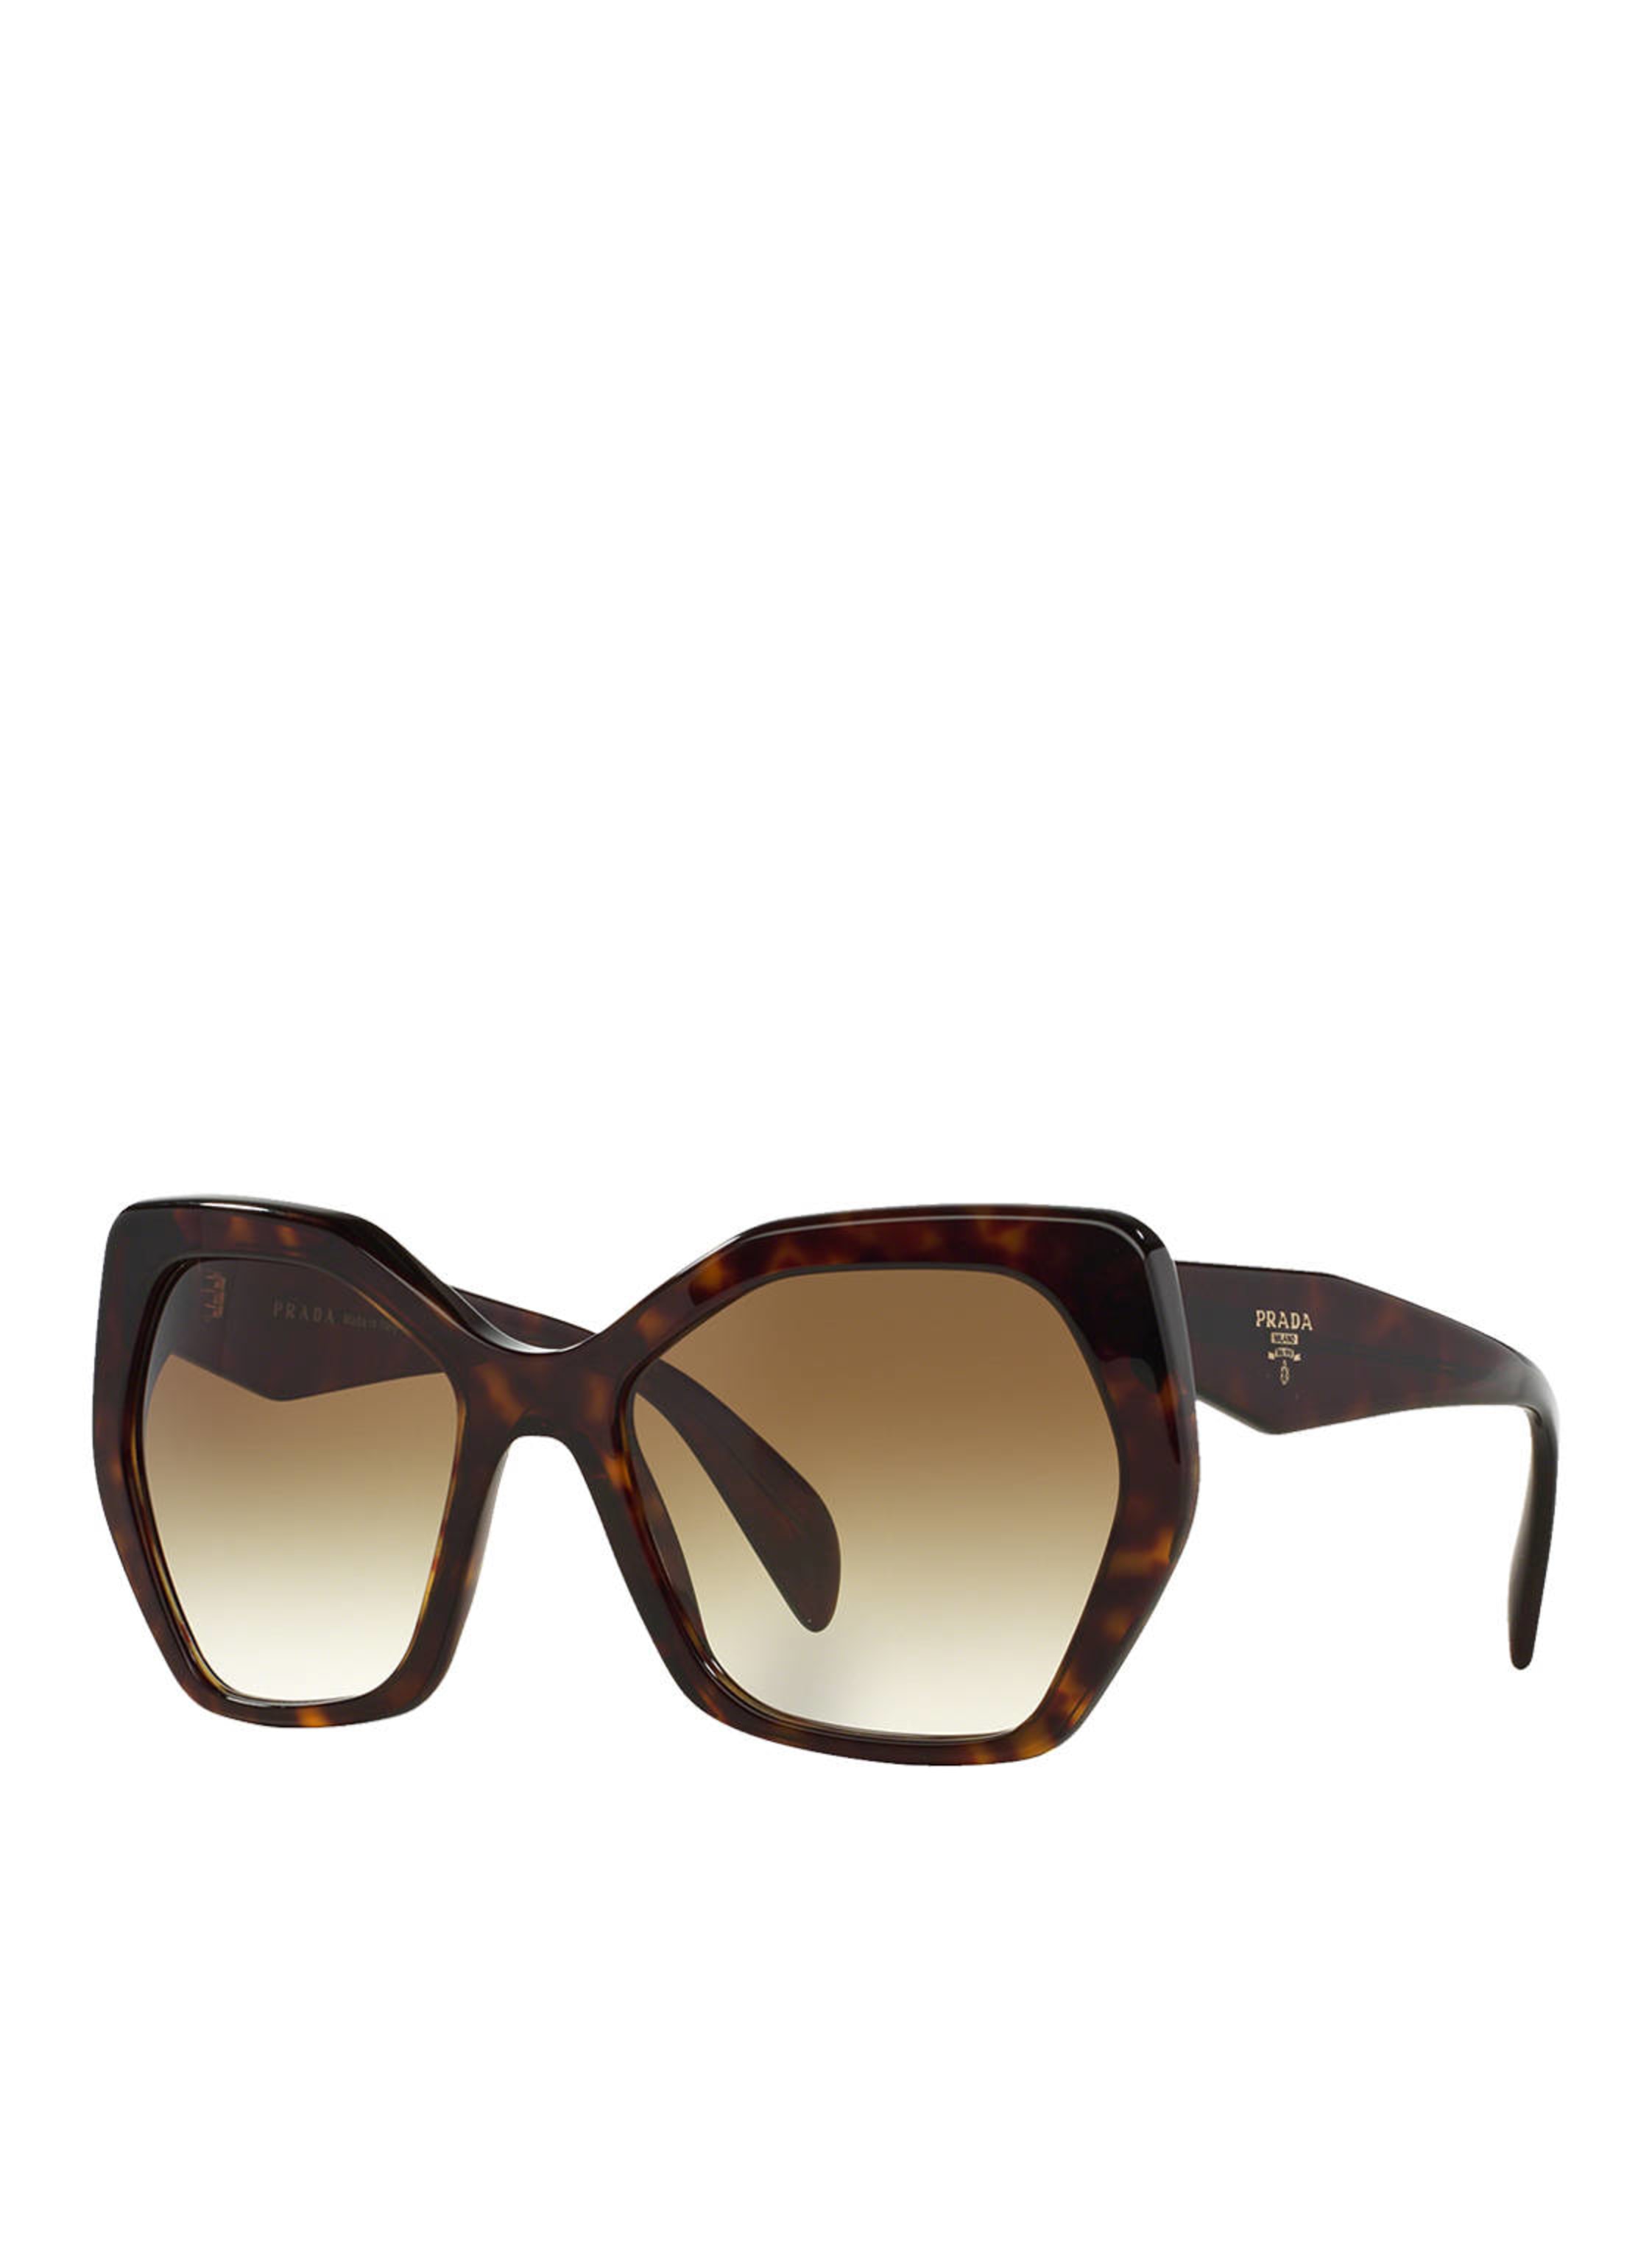 PRADA Sunglasses PR 16RS in 2au4m0 - havana/brown gradient | Breuninger